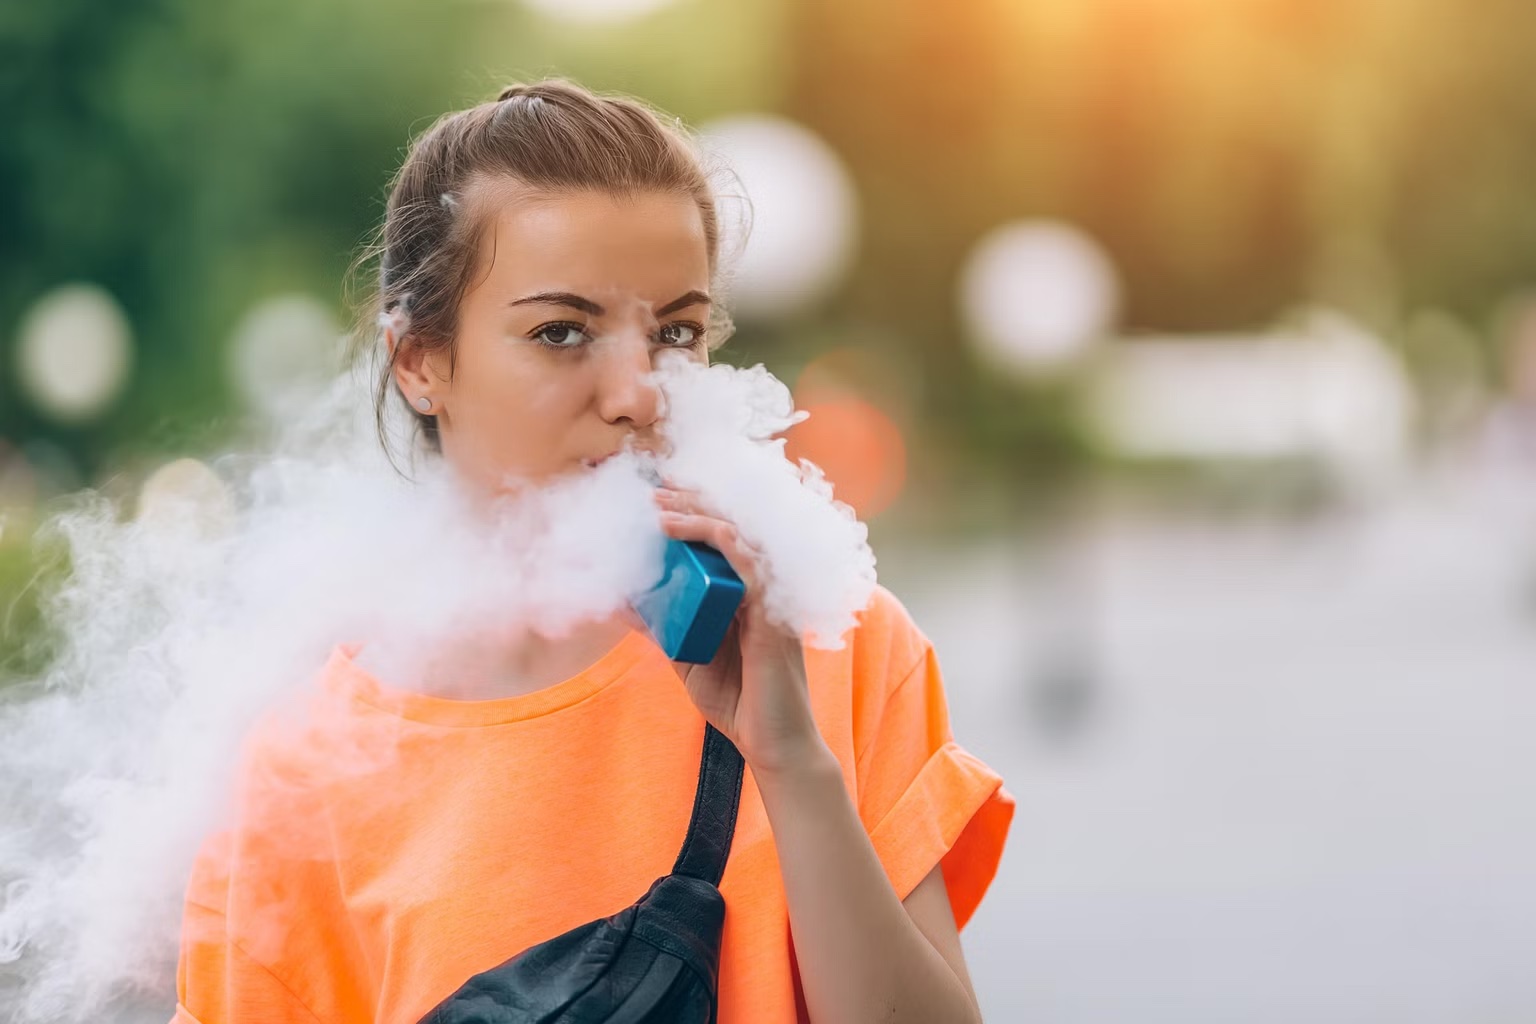 『喫煙経験のない若年者は電子タバコの使用で喘息リスクが上昇、米横断研究』のイメージ